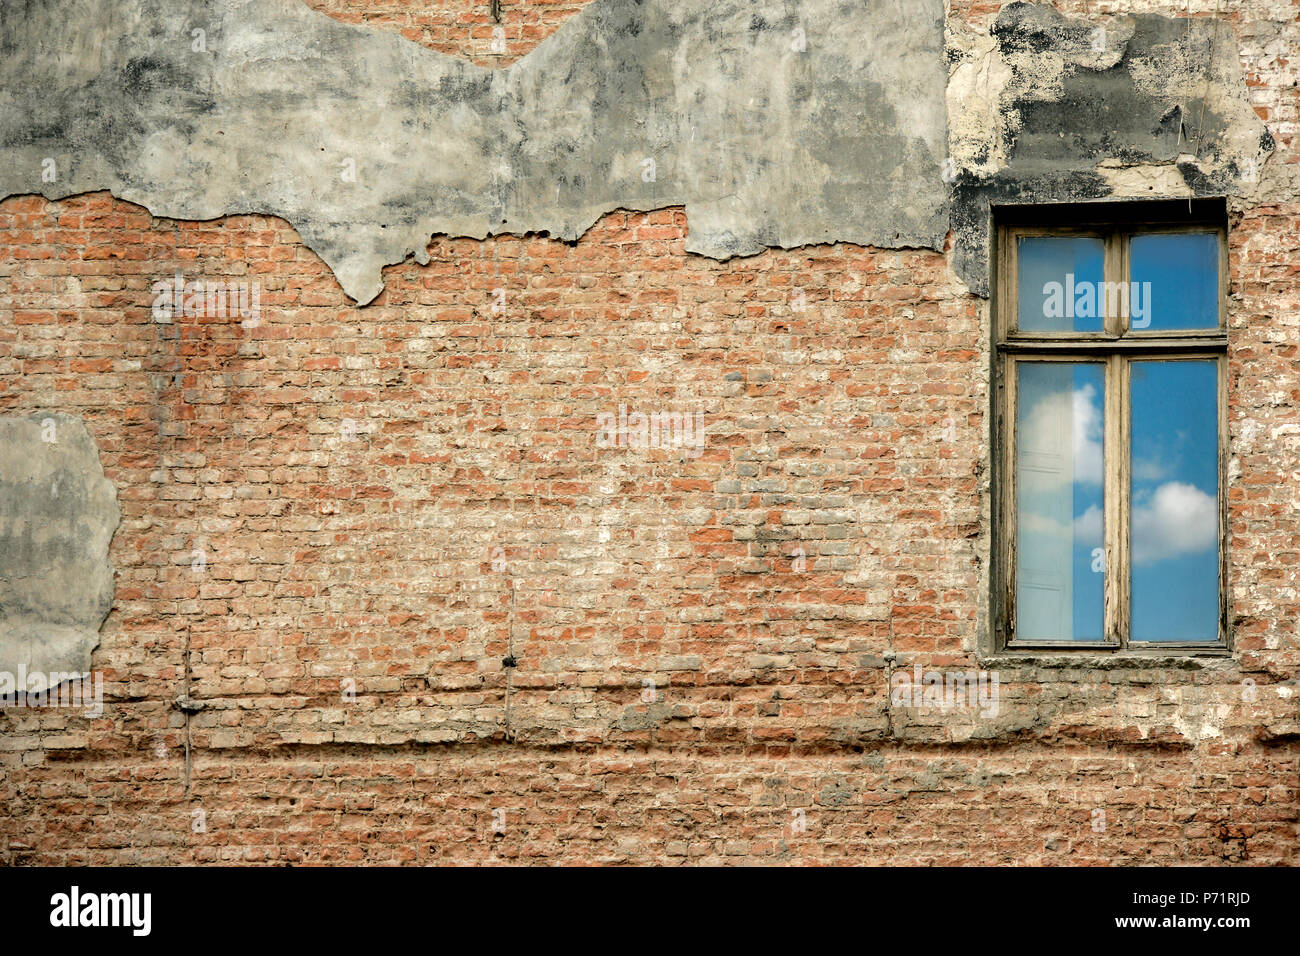 Dettagli architettonici da un piccolo villaggio,Turchia Foto Stock